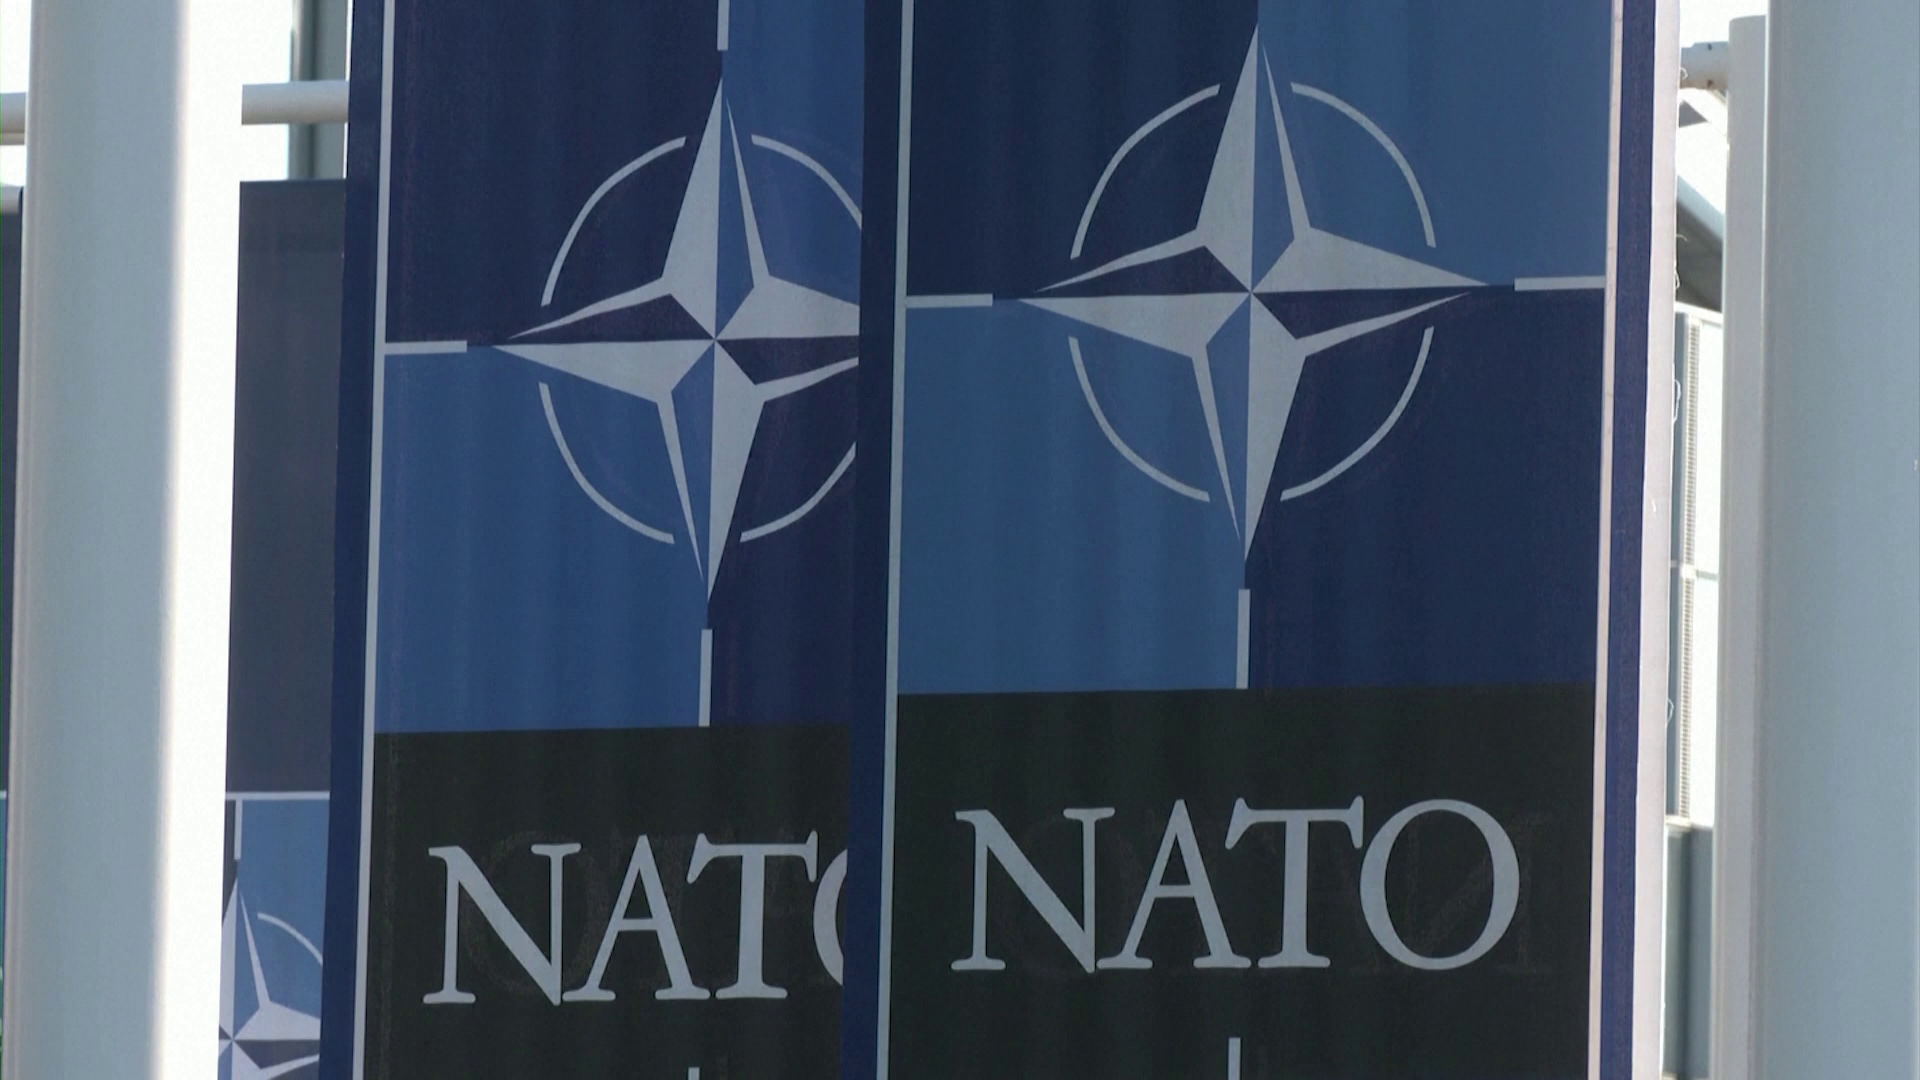 Orosz elnöki szóvivő: A NATO továbbra is háborúra kényszeríti Kijevet 